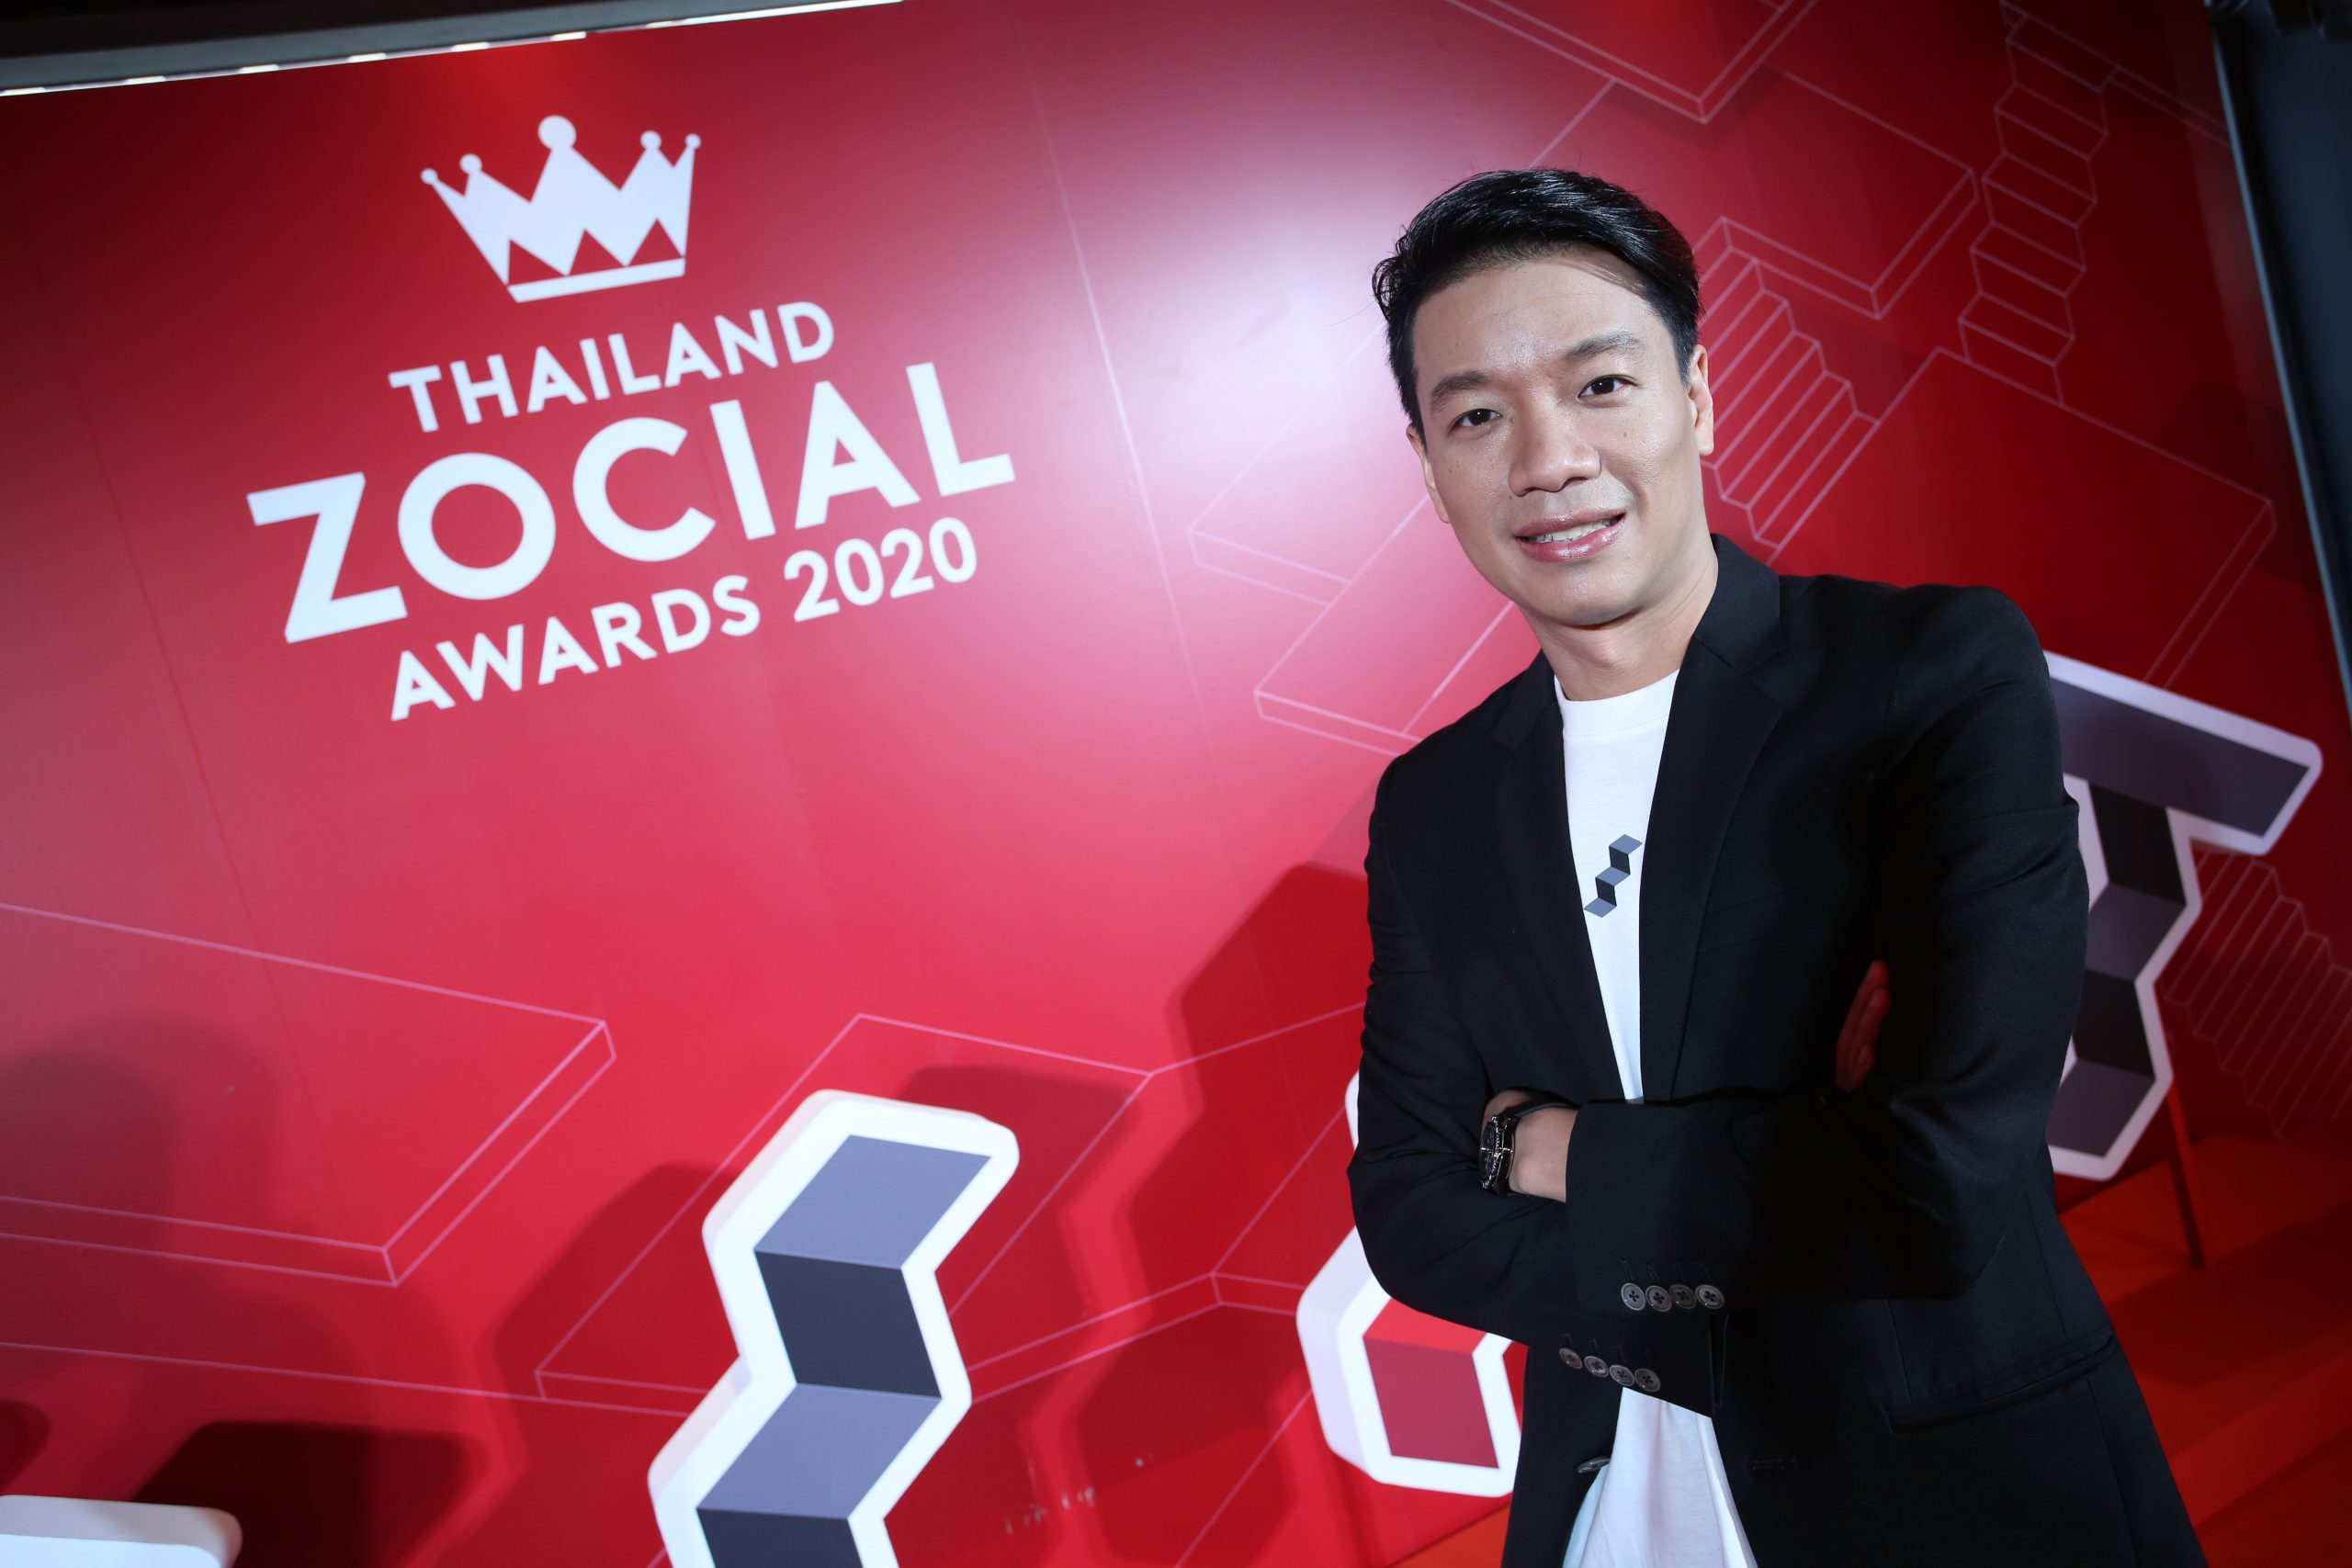 Thailand Zocial Awards 2020 (ไทยแลนด์ โซเชียล อวอร์ด 2020)